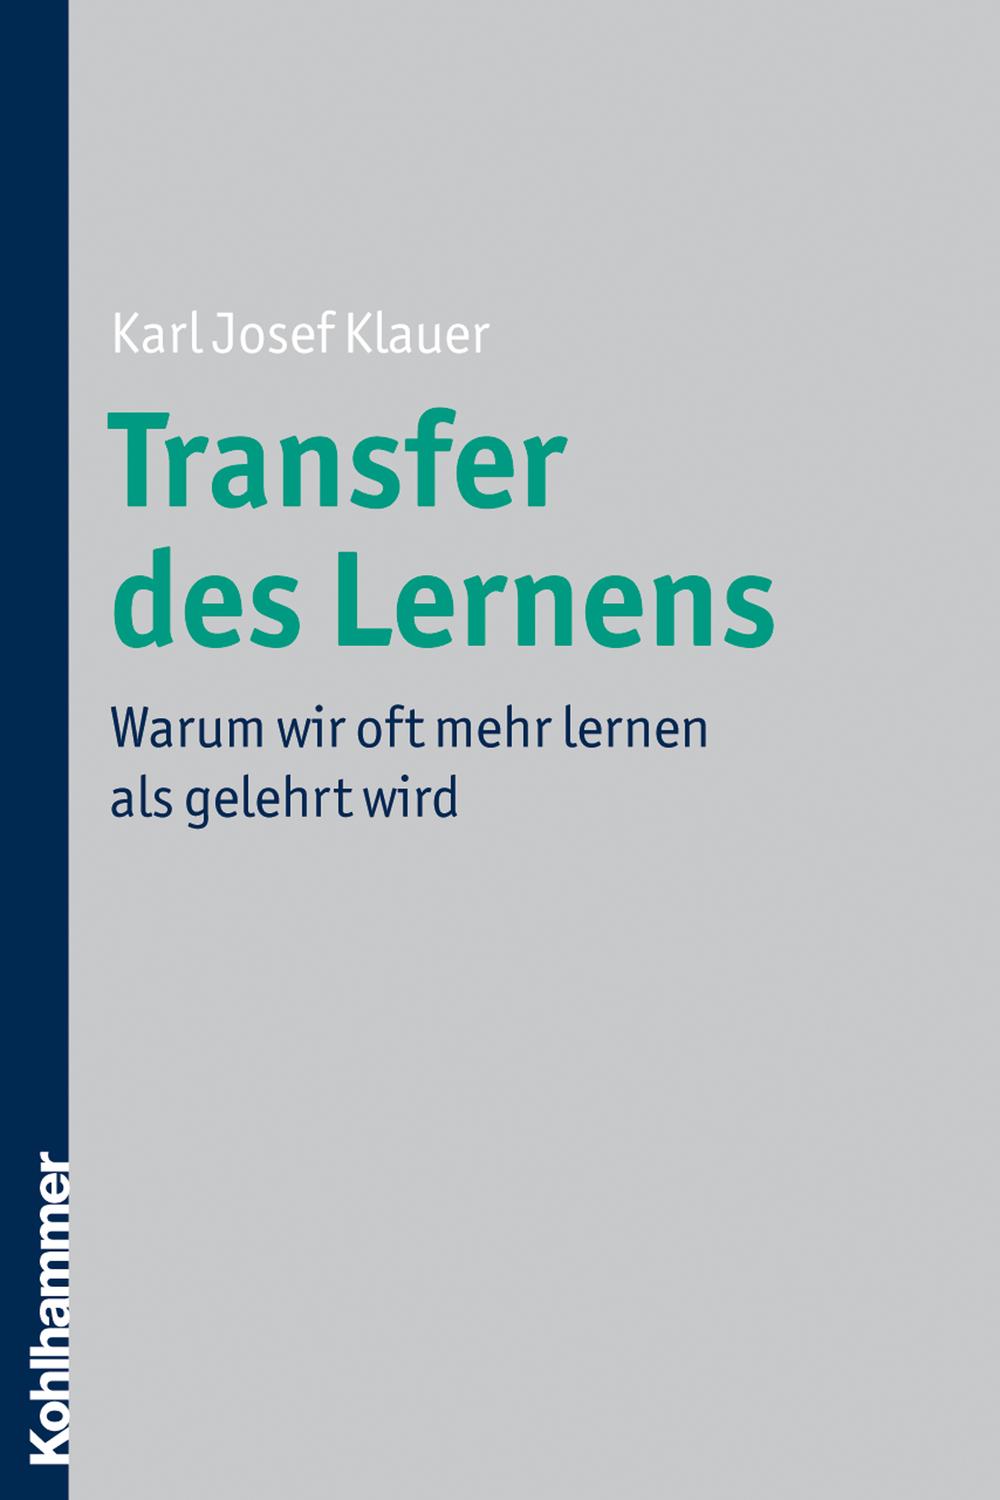 Transfer des Lernens - Karl Josef Klauer